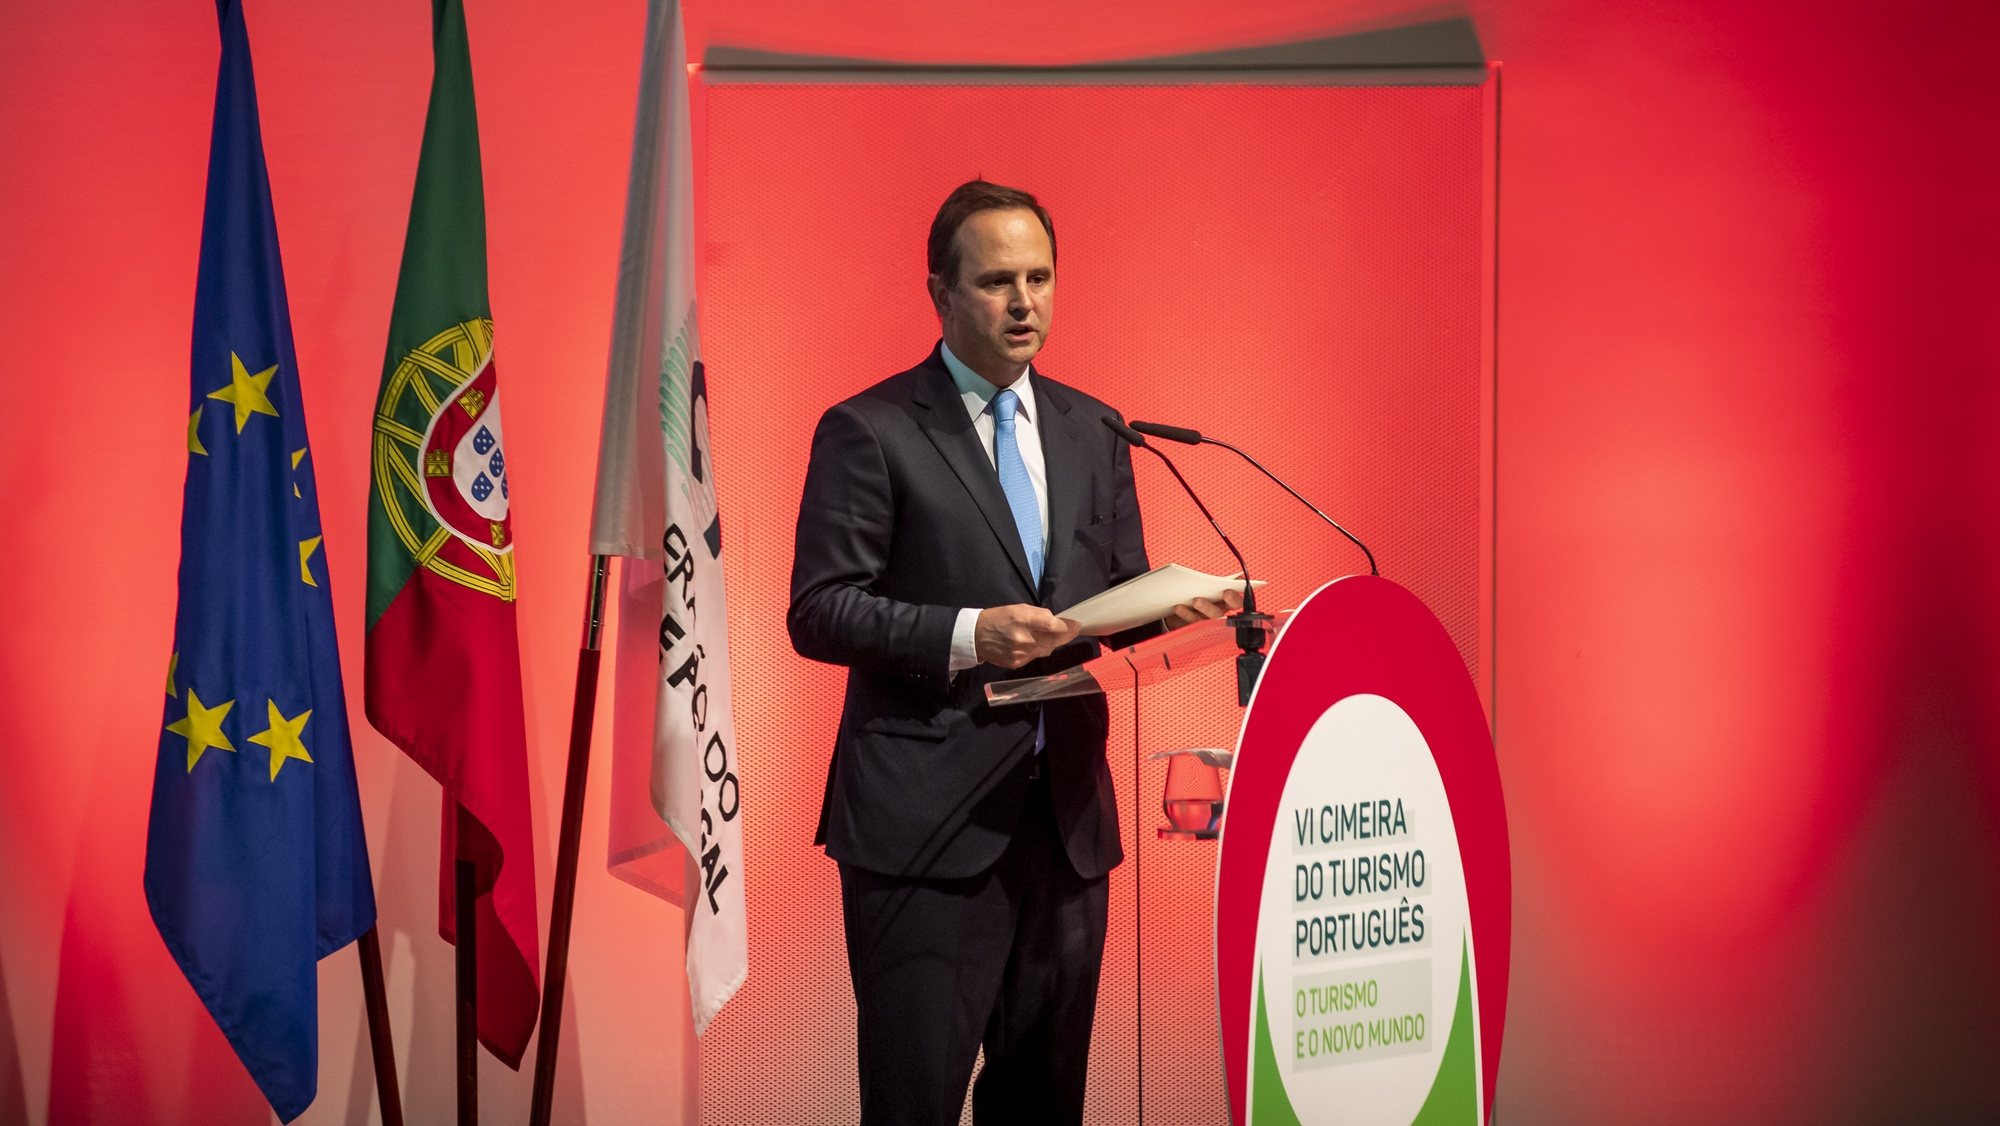 O ministro das Finanças, Fernando Medina, usa da palavra durante a VI Cimeira do Turismo Português, no auditório da Fundação Champalimaud, em Lisboa, 27 de setembro 2022. JOSÉ SENA GOULÃO/LUSA